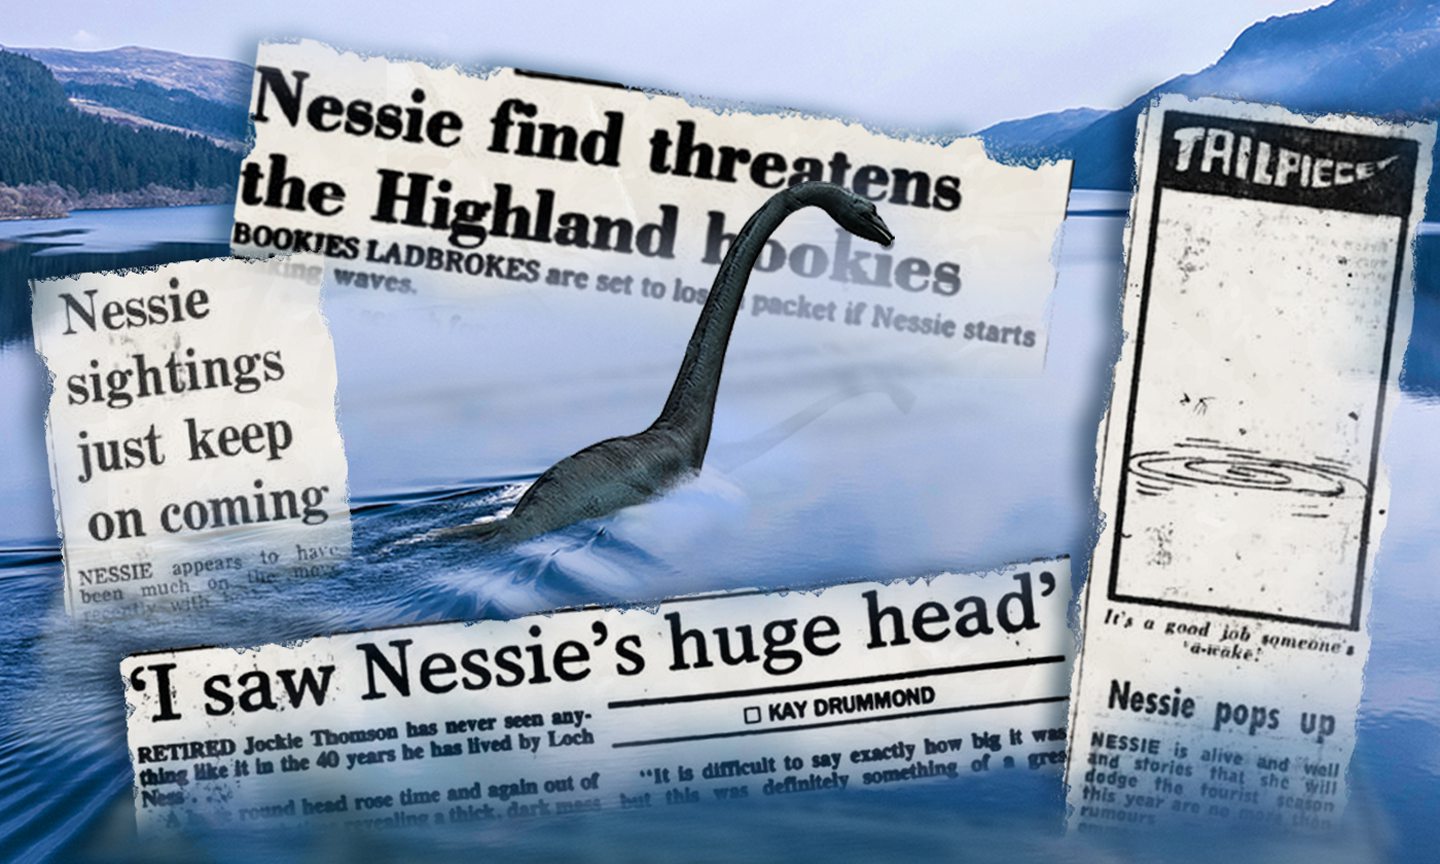 When Nessie amazed an Invermoriston man 30 years ago